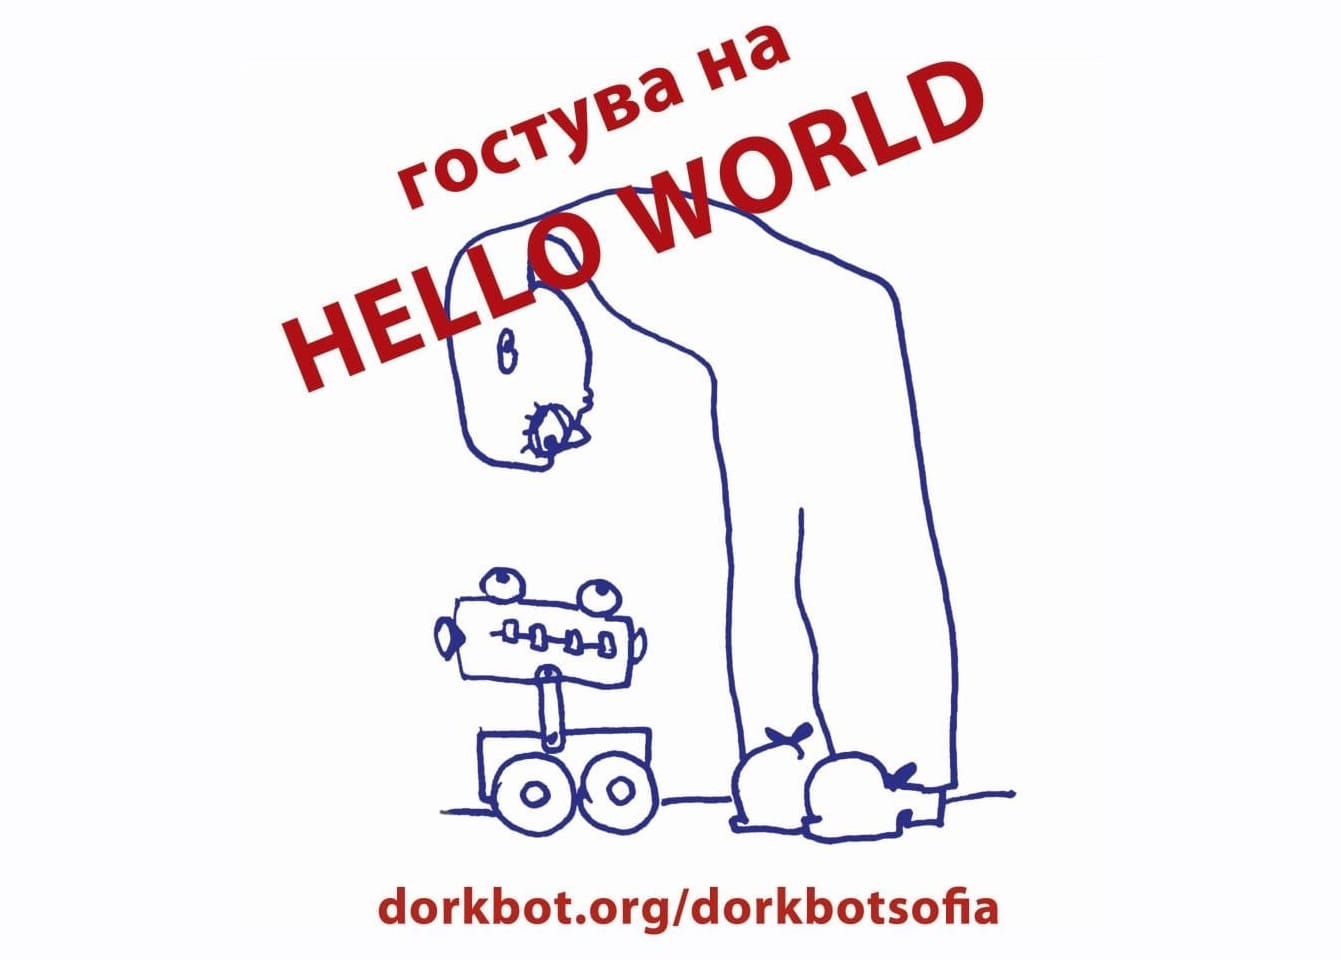 Dorkbot Sofia #10 at Hello World